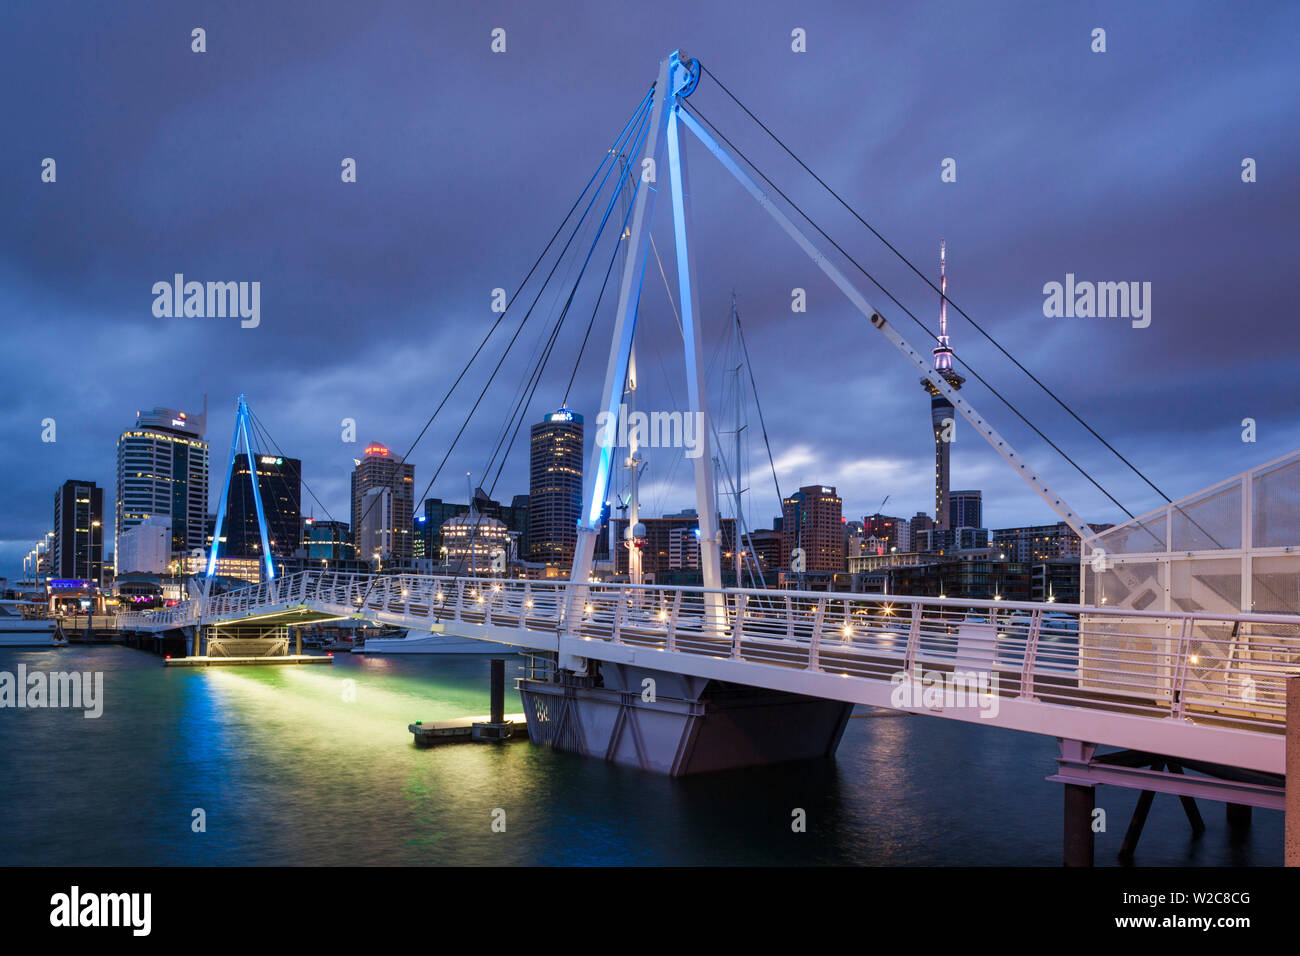 Nuova Zelanda, Isola del nord di Auckland, Viaduct Harbour, passerella, alba Foto Stock